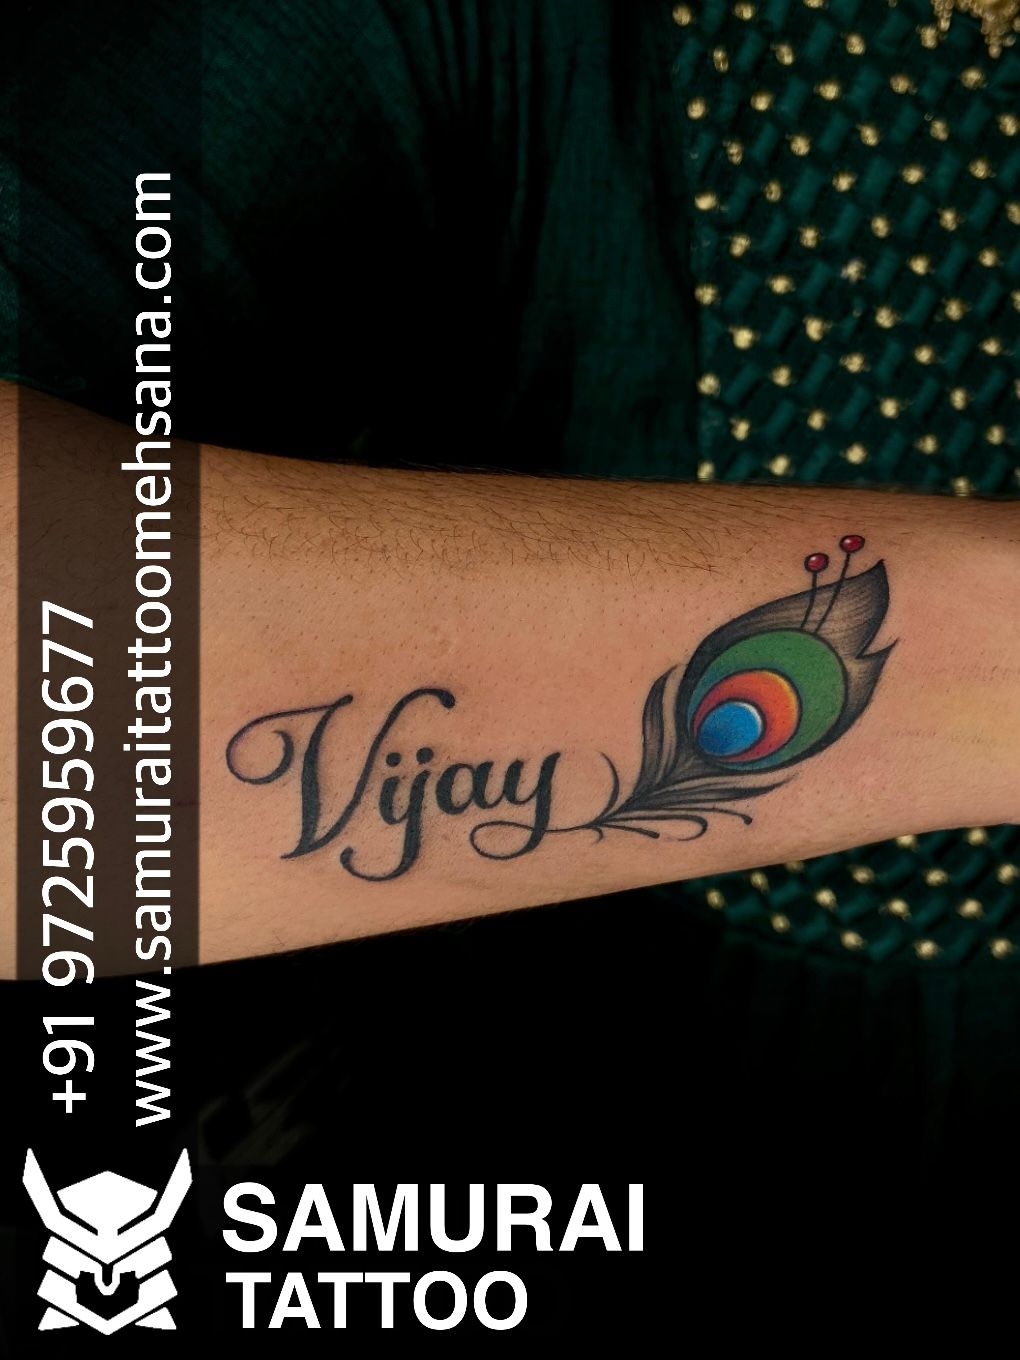 Tattoo uploaded by Vipul Chaudhary • vijay name tattoo |Vijay ...